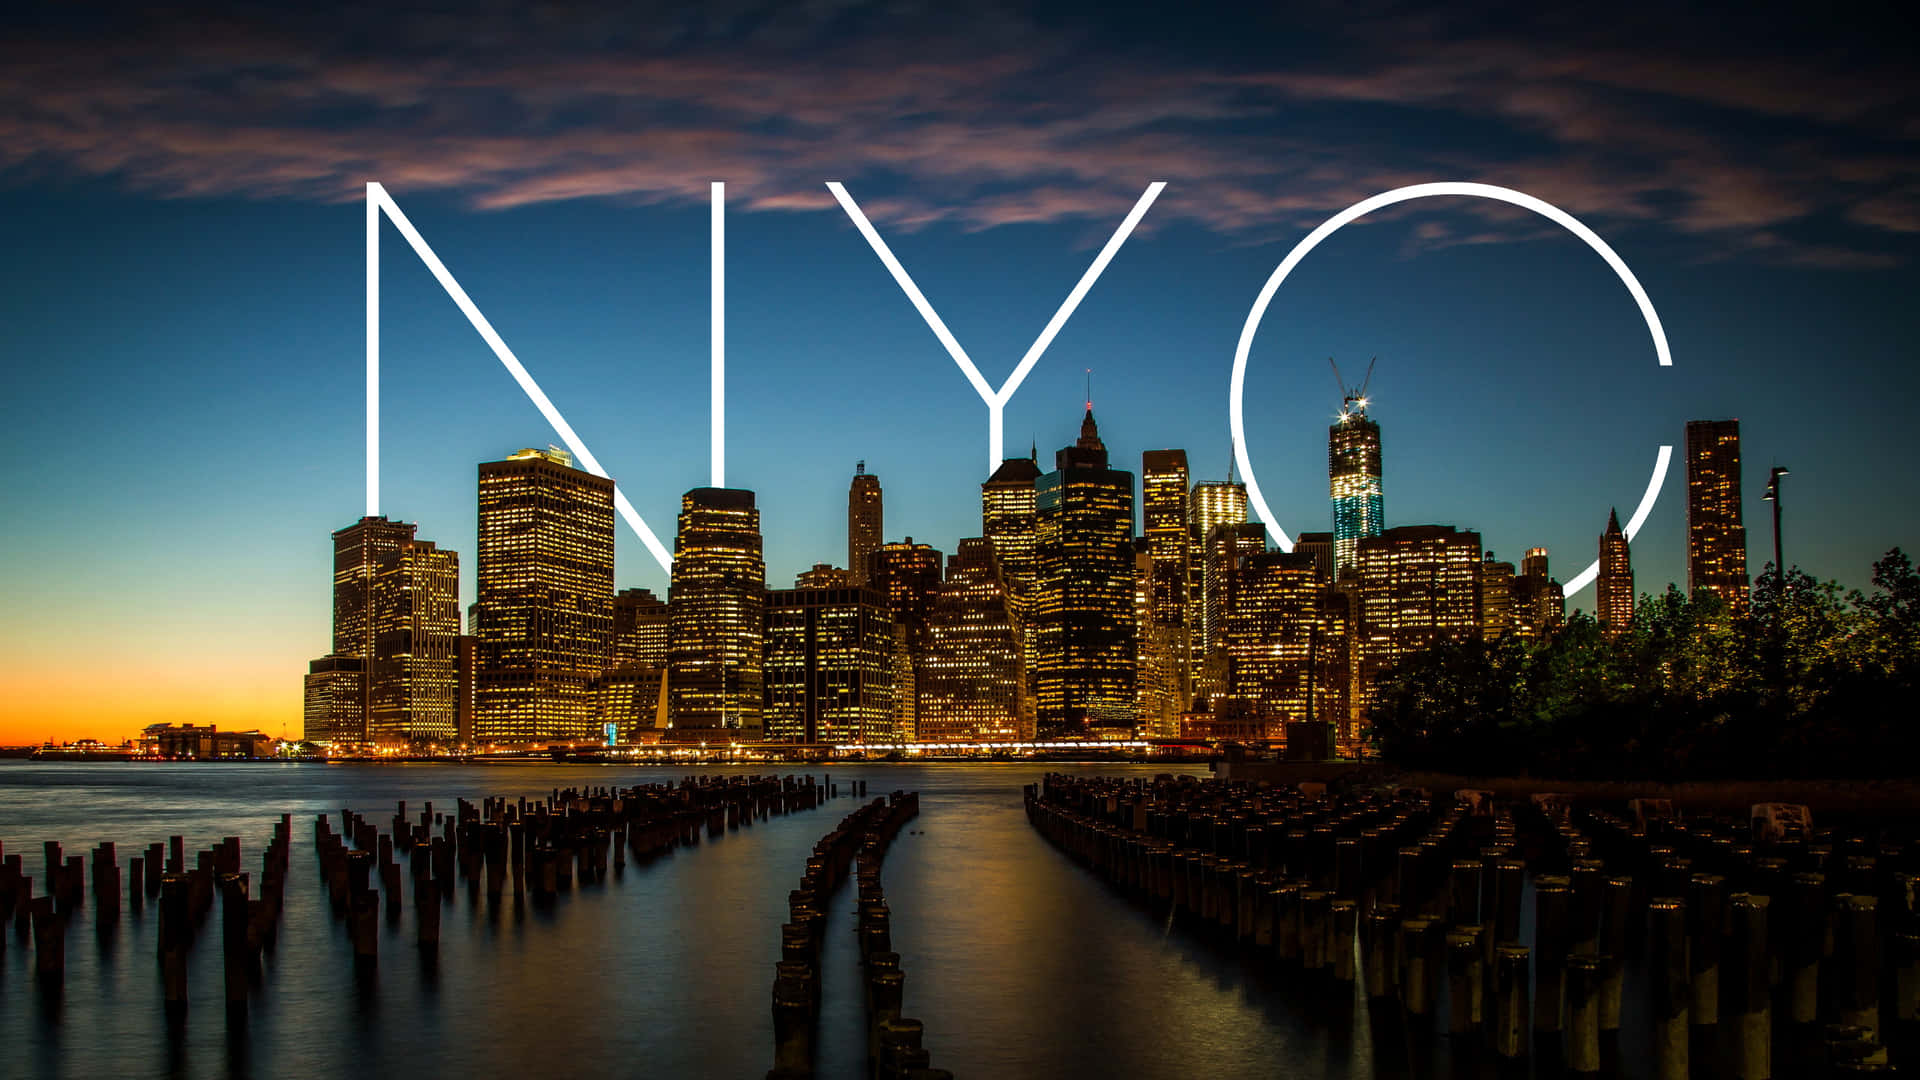 Eineskyline Der Ikonischen Stadt New York. Wallpaper